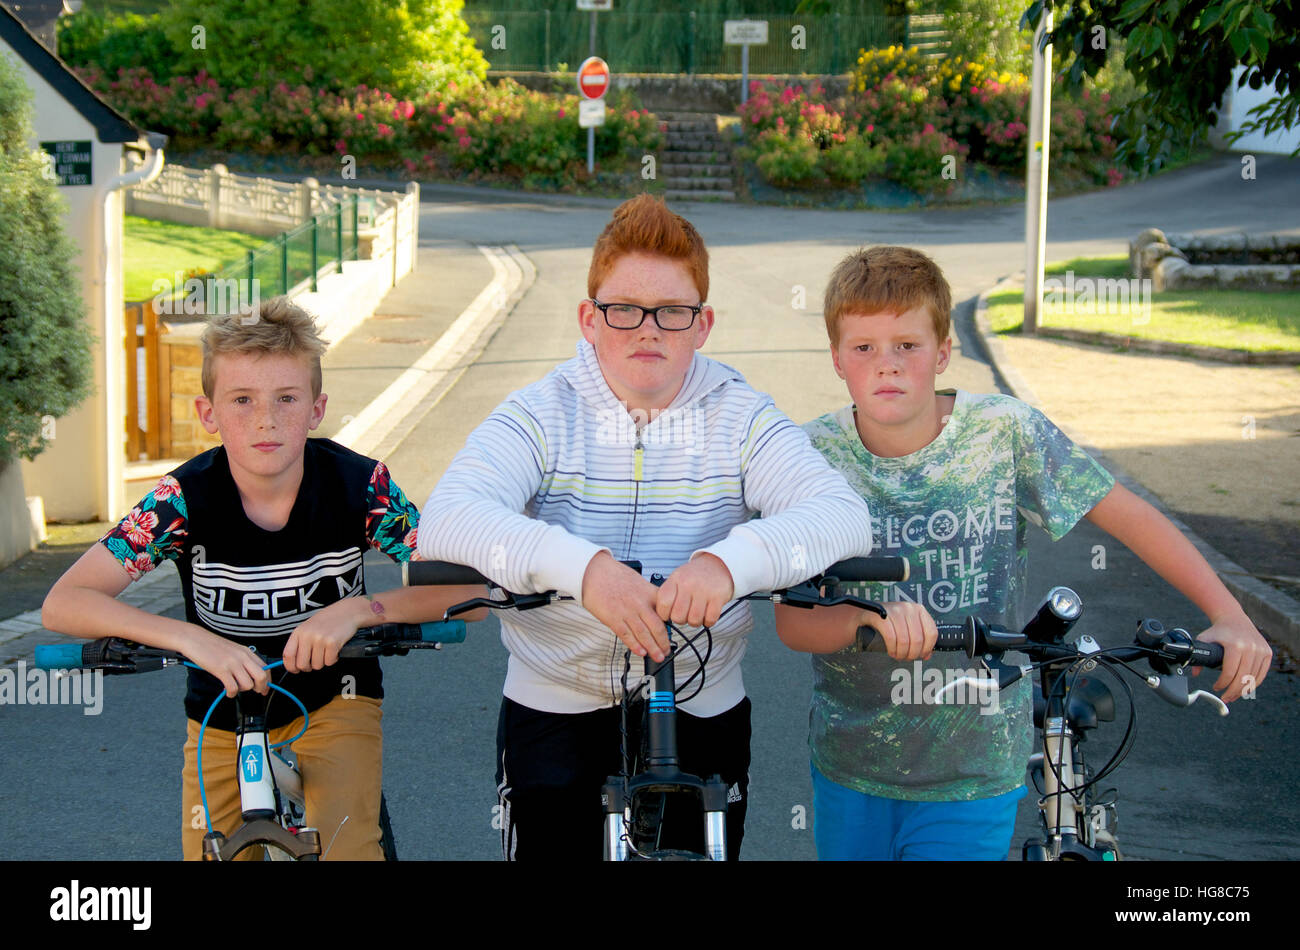 Gang de jeunes garçons sur des vélos sur une rue de banlieue Banque D'Images